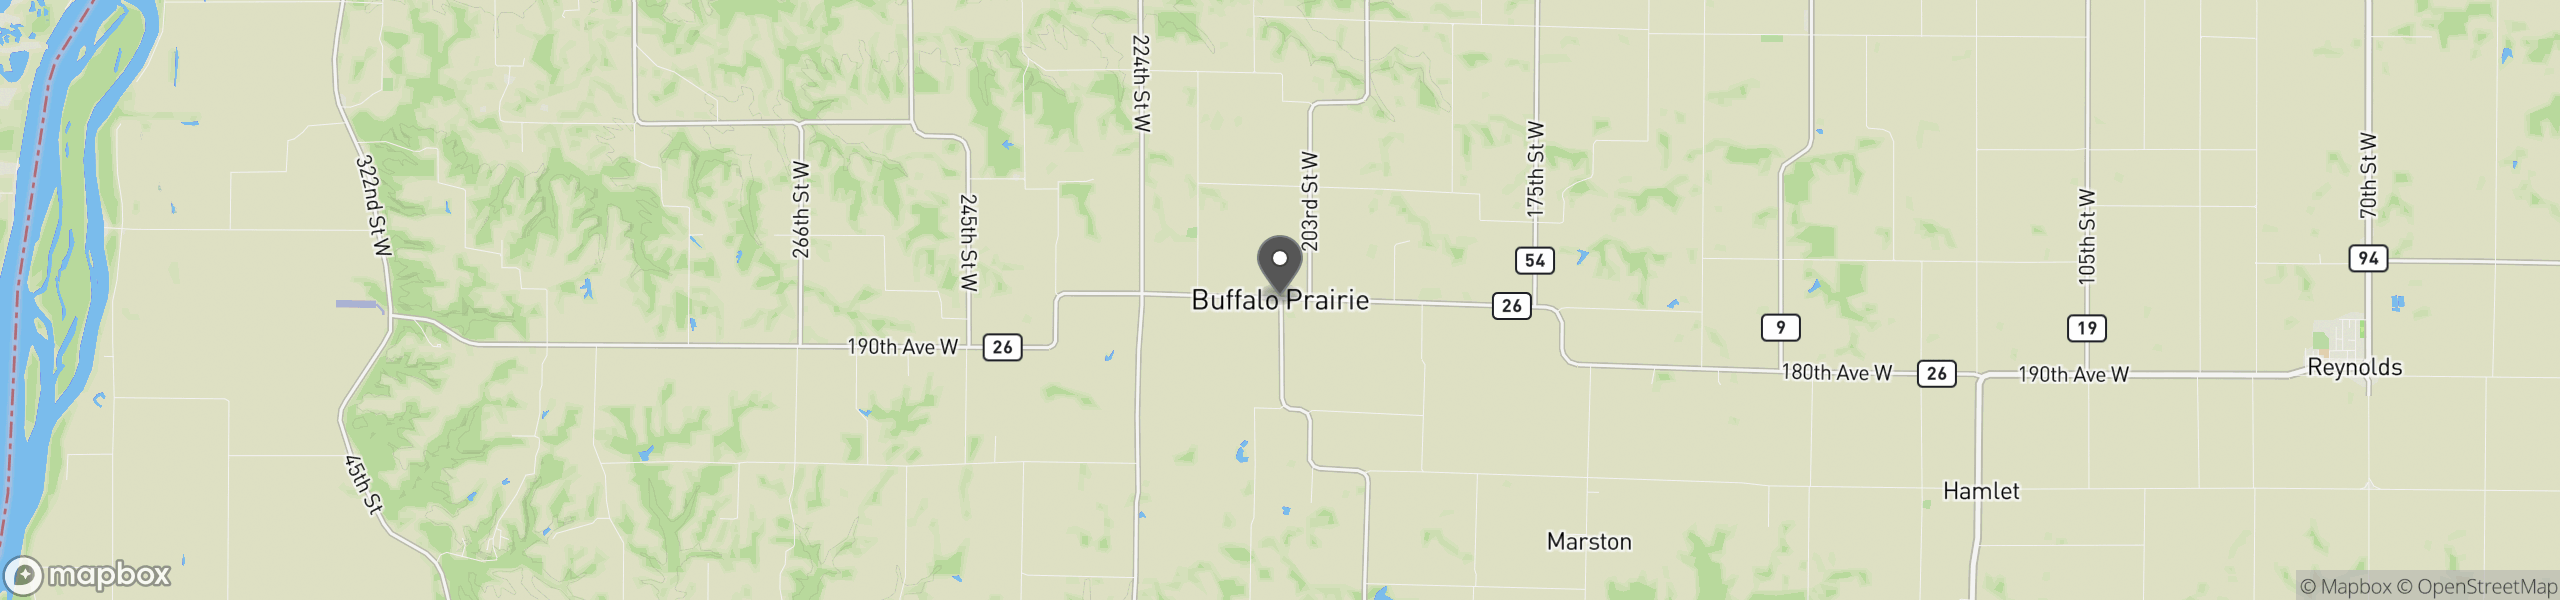 Buffalo Prairie, IL